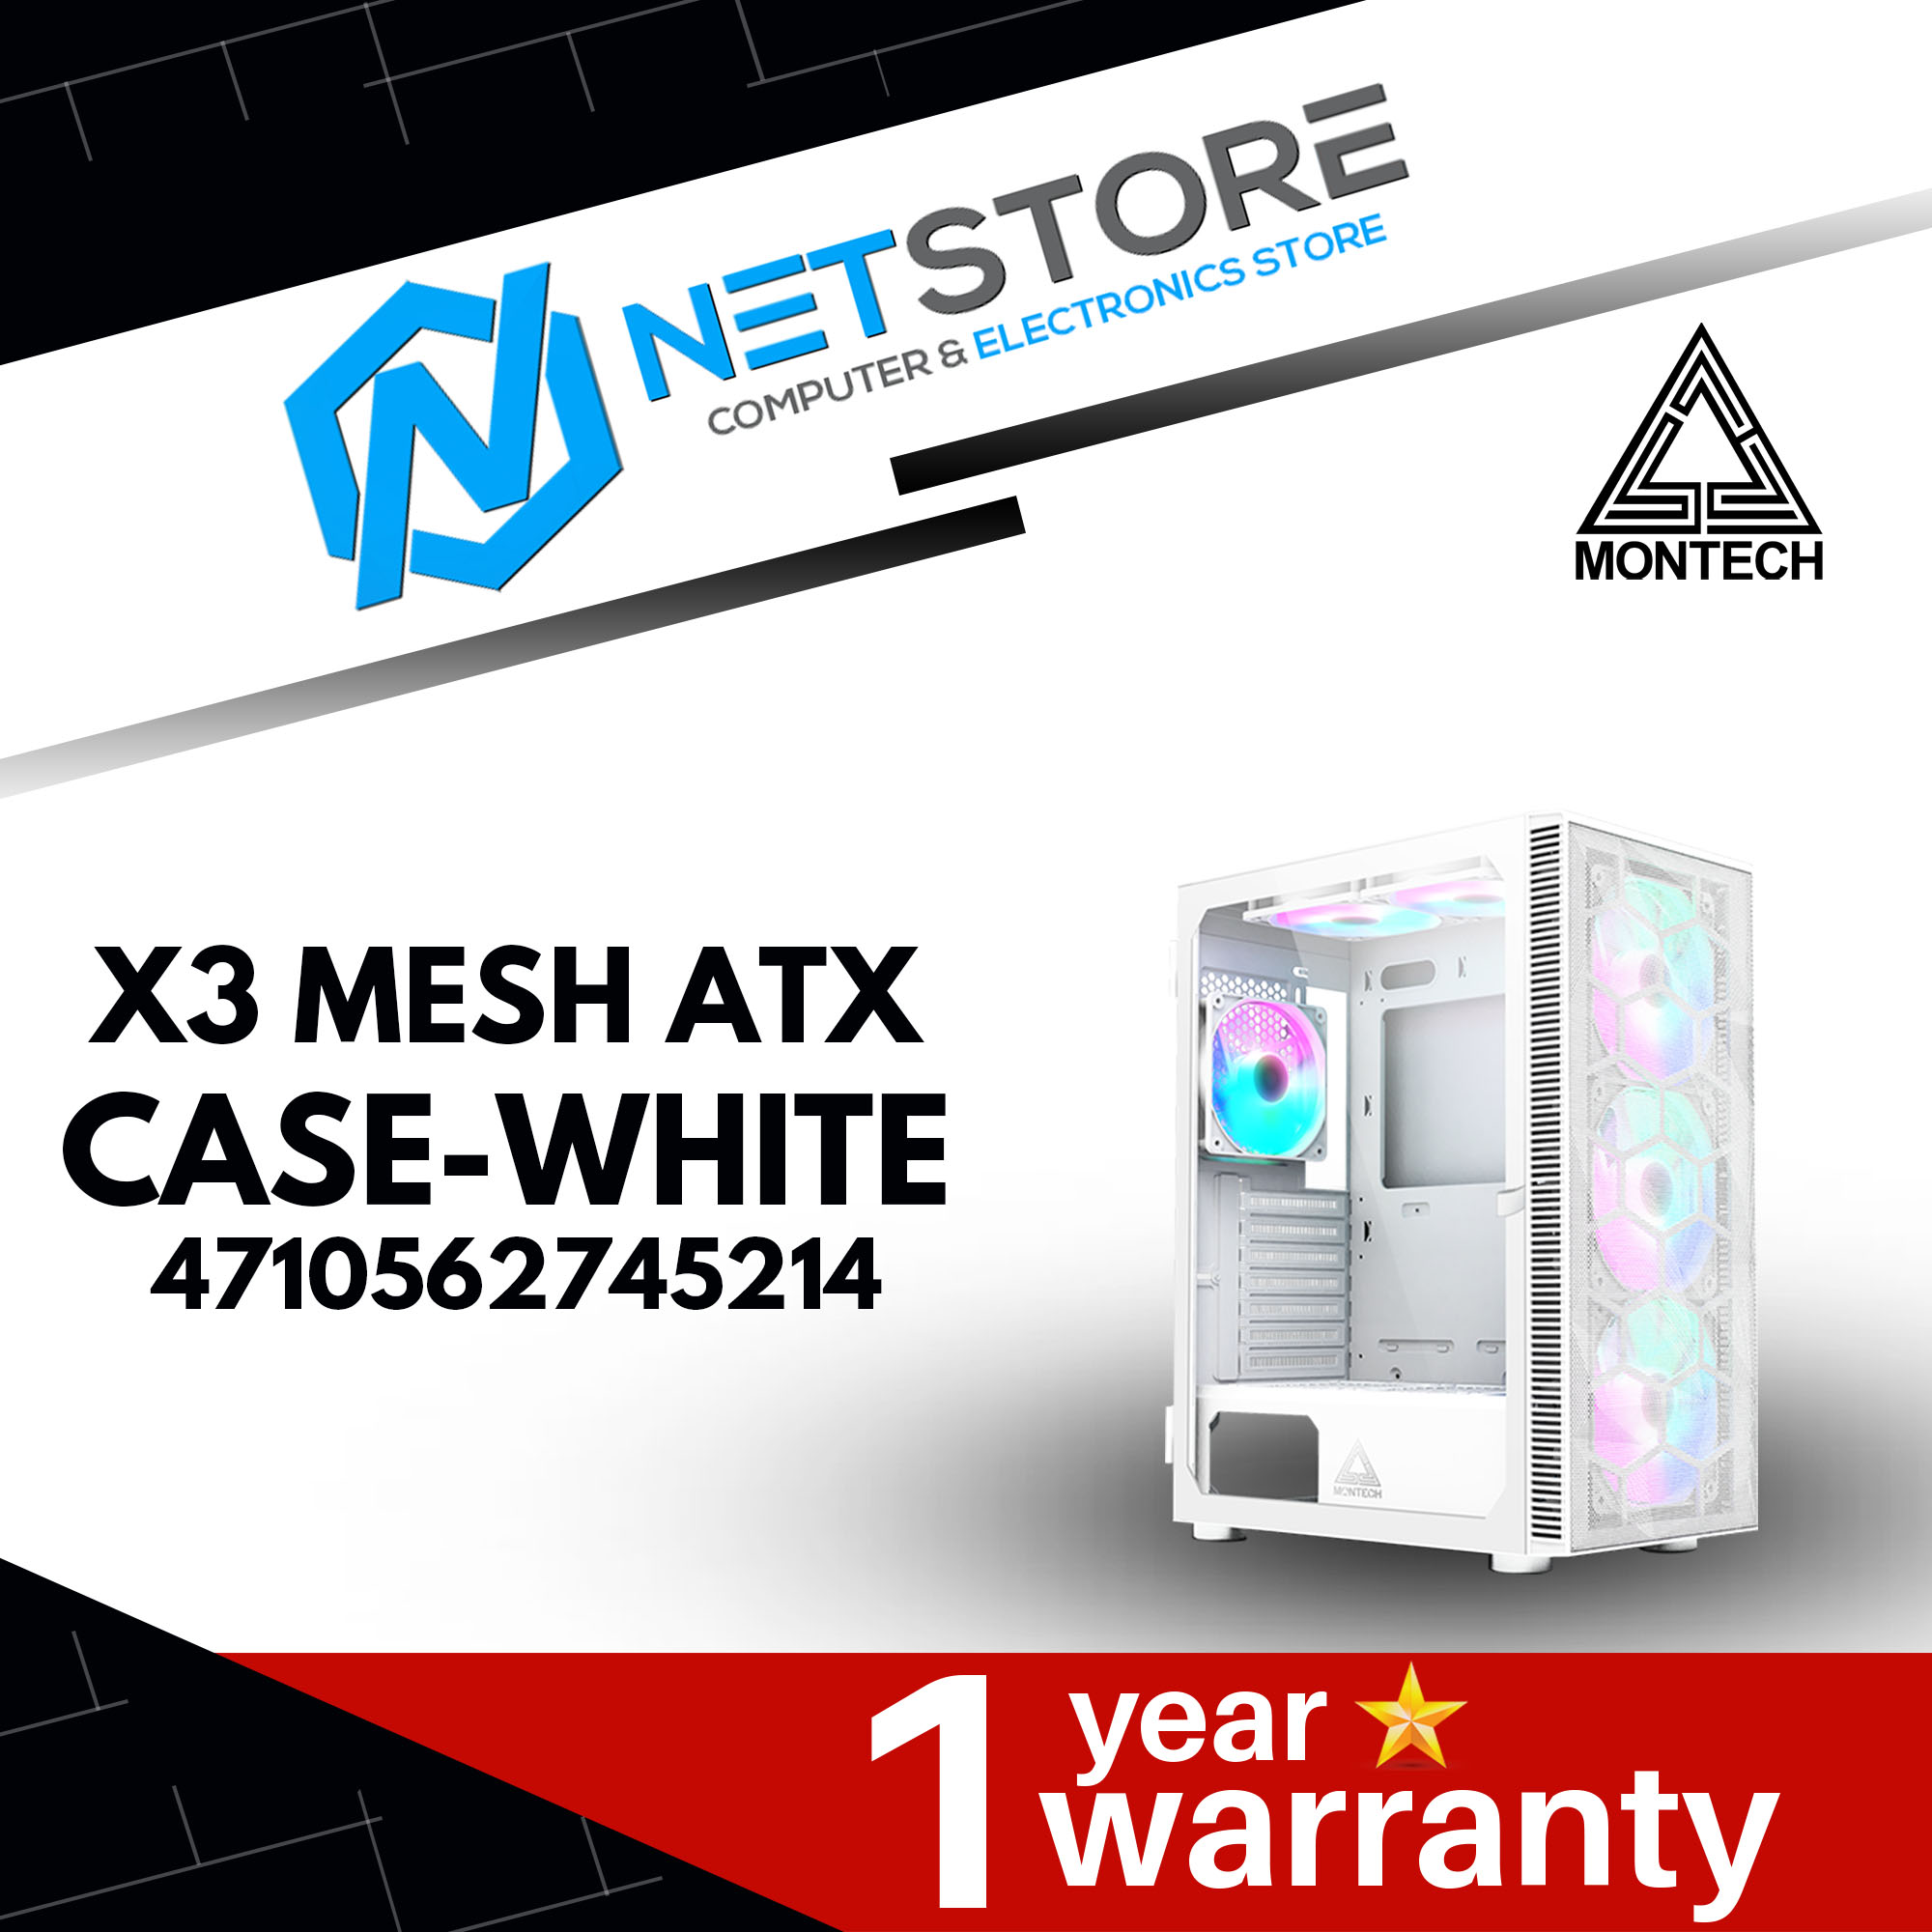 MONTECH X3 MESH ATX CASE - WHITE - 4710562745214